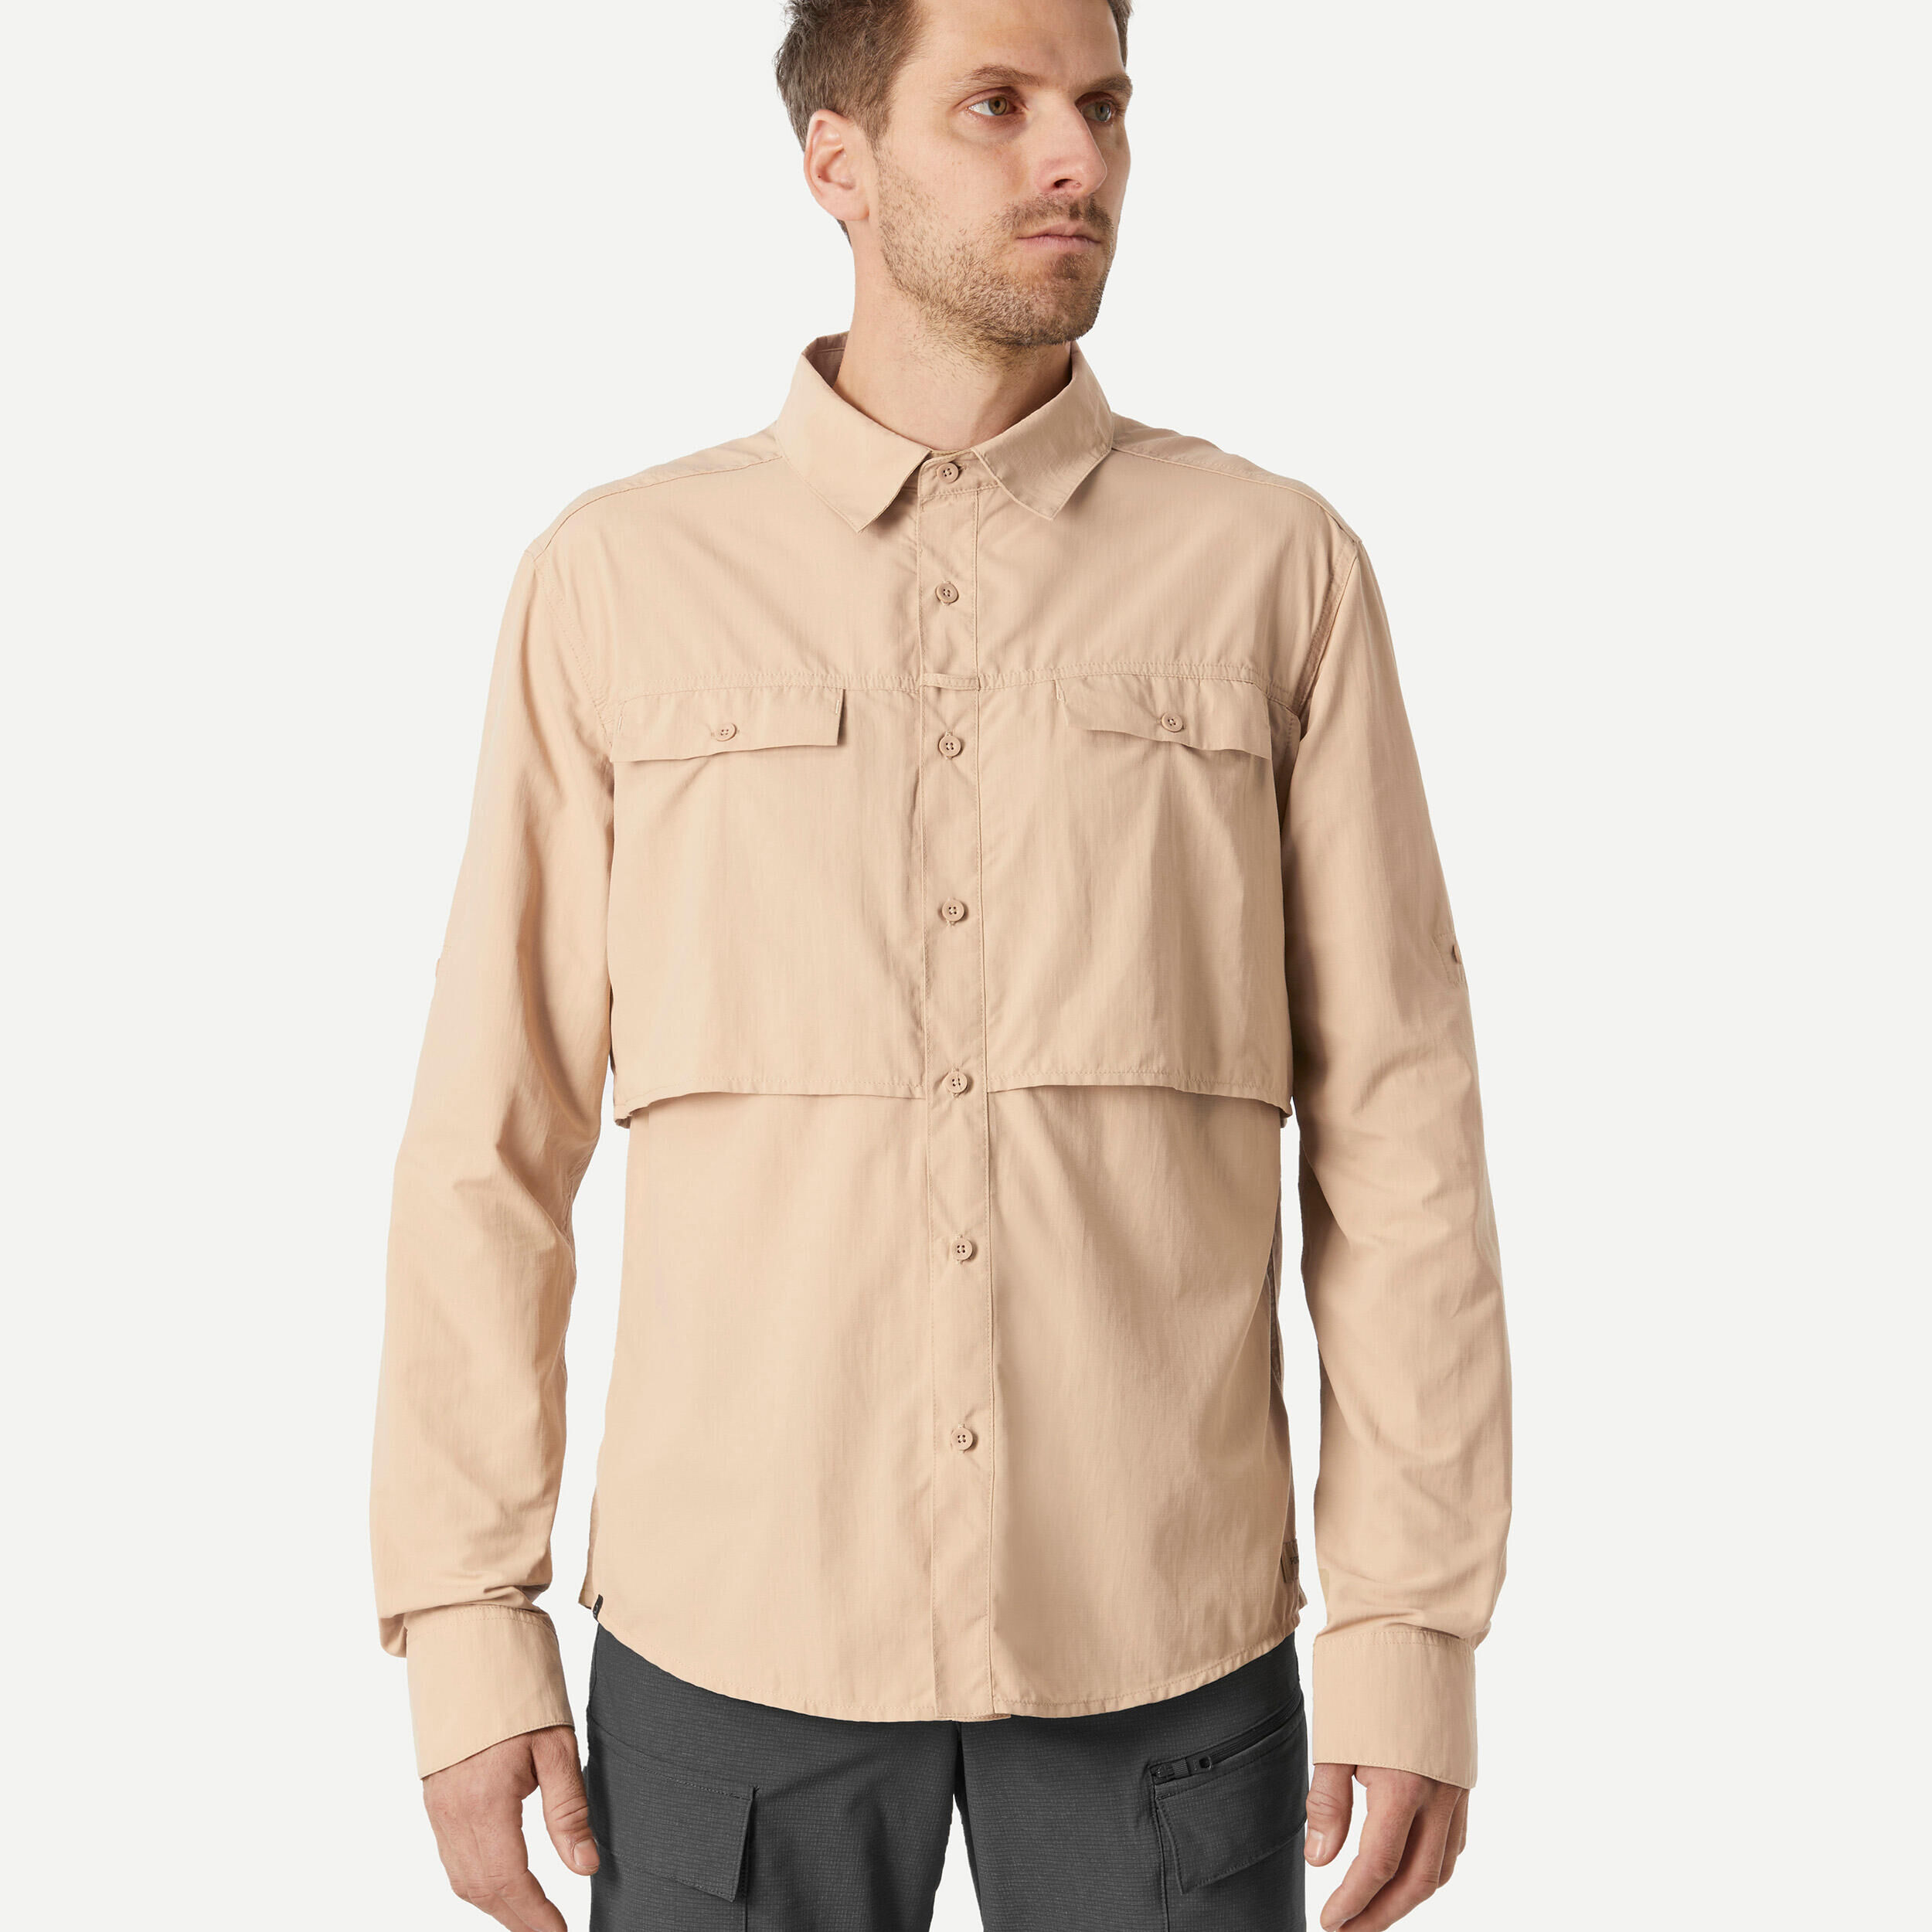 FORCLAZ Men's long sleeved anti-UV desert trekking shirt - DESERT 900 - Beige